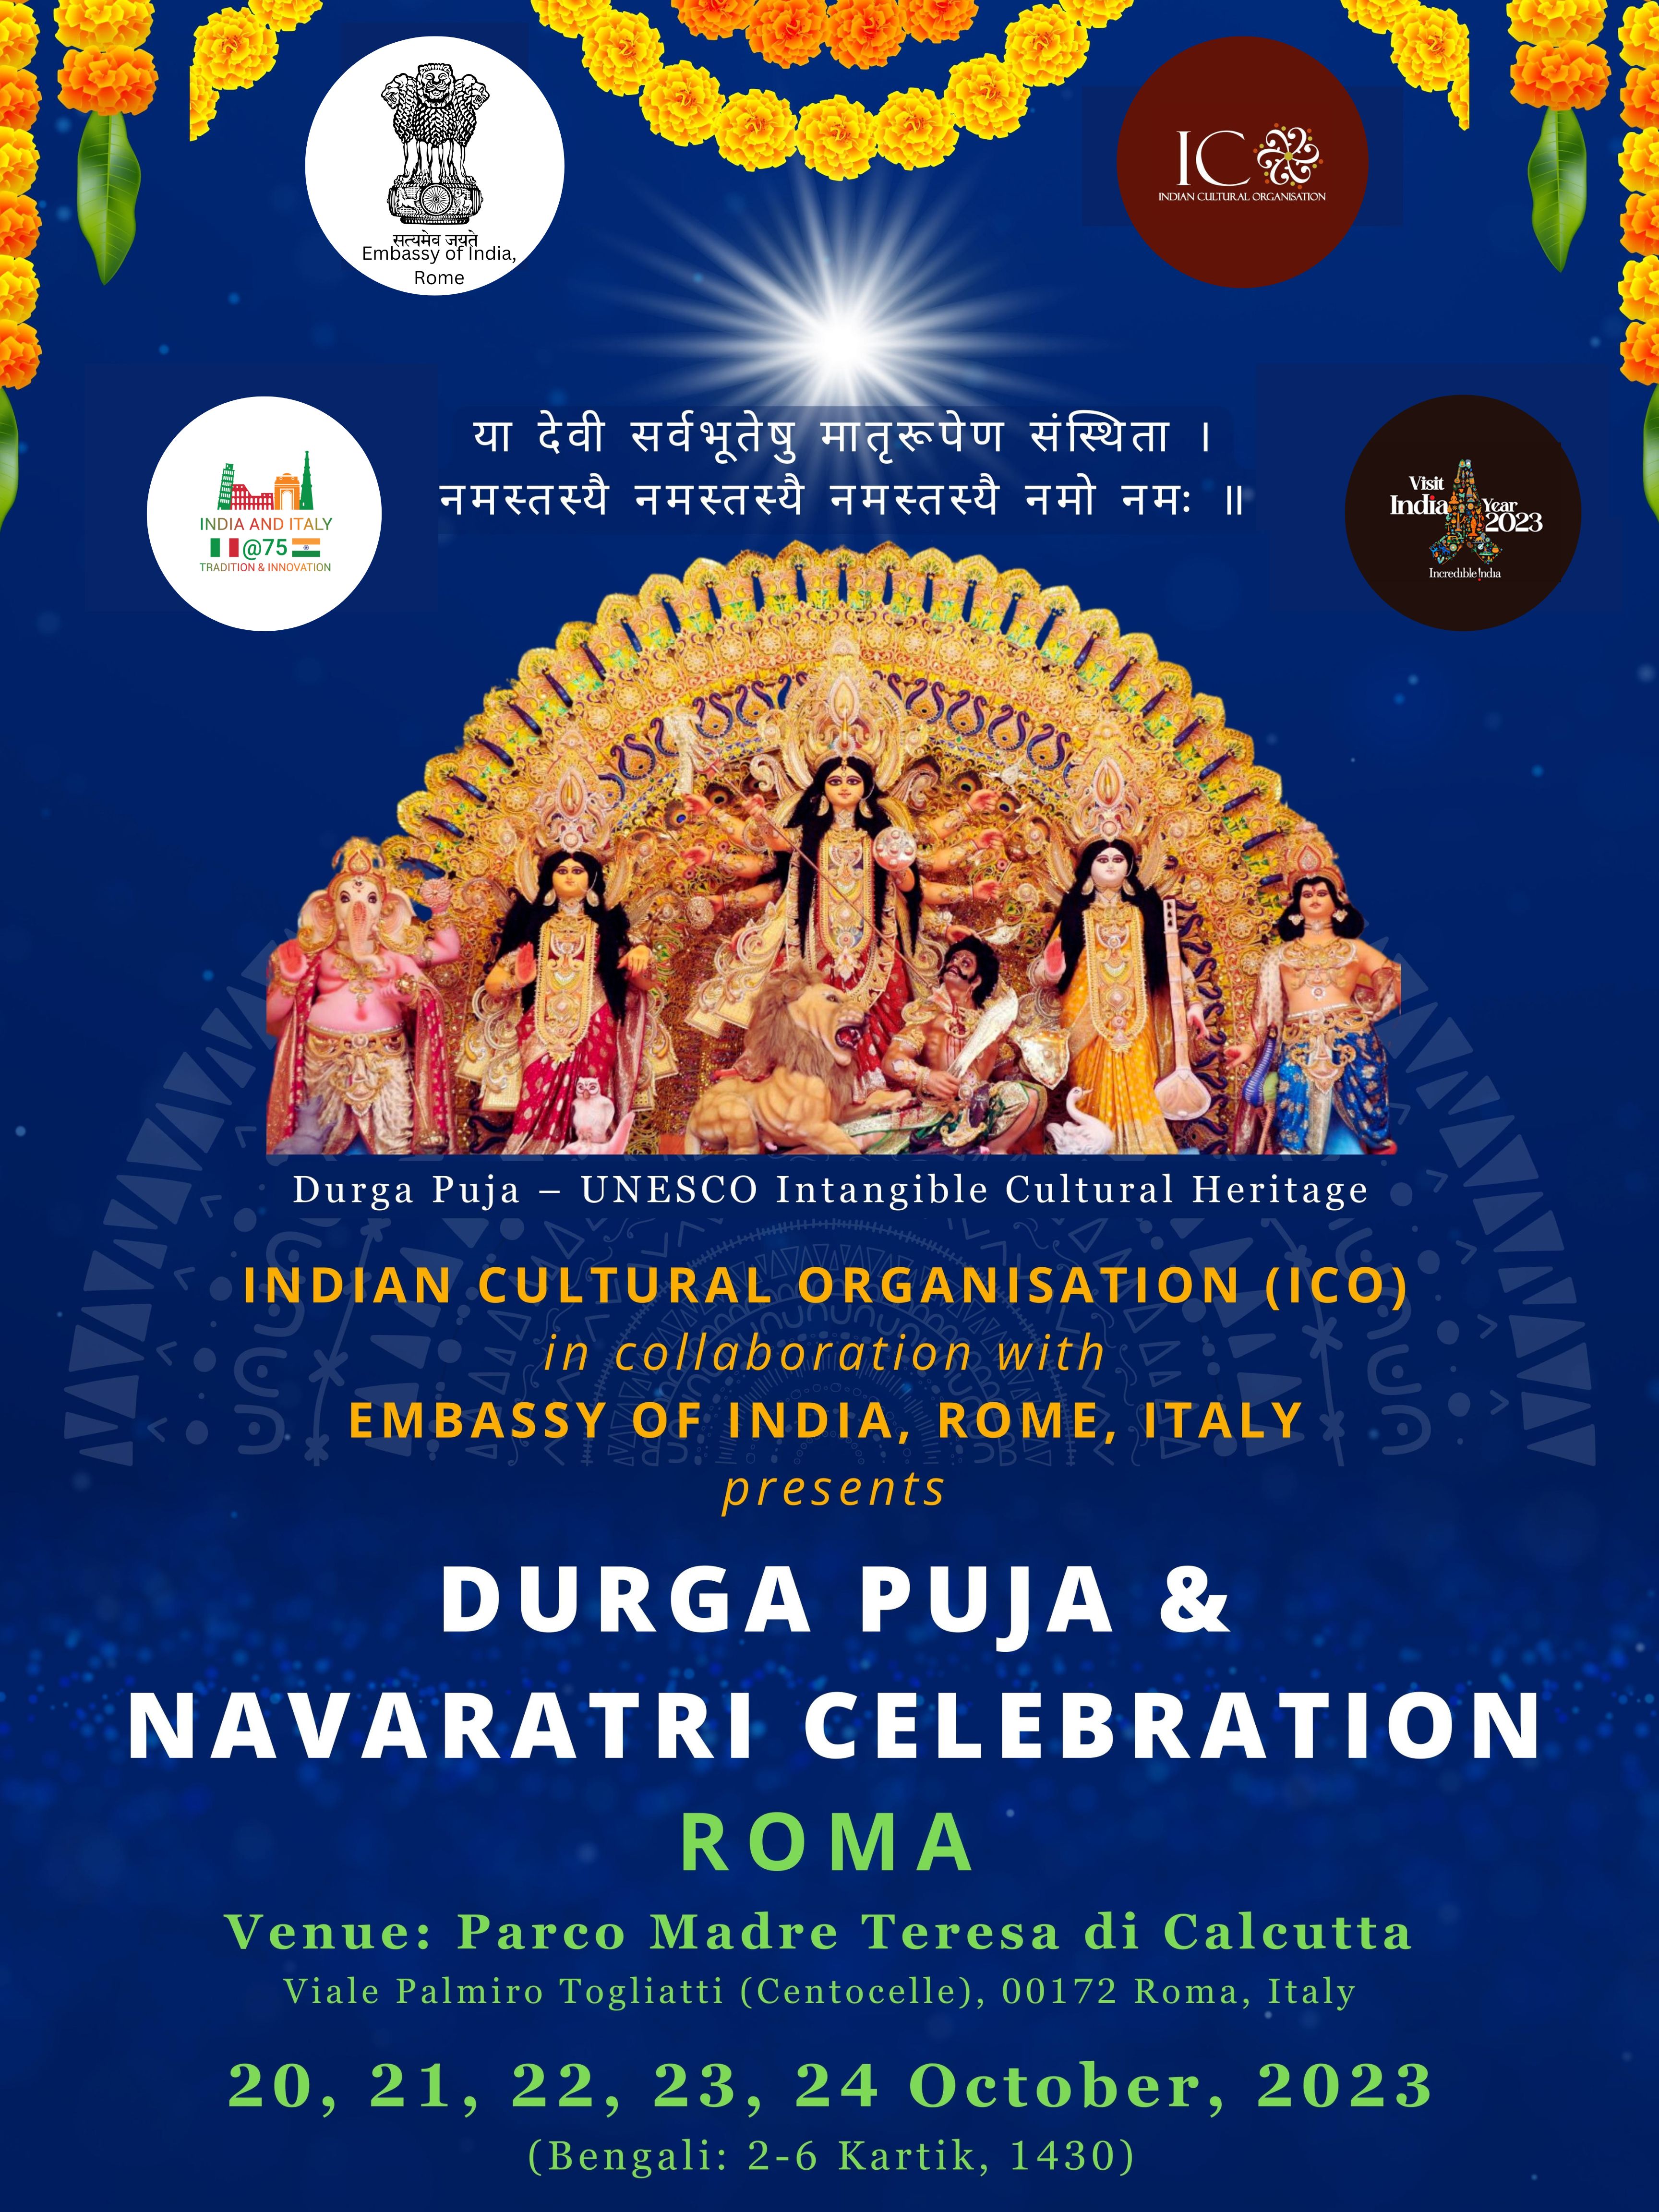 Durga Puja & Navaratri Celebration in Rome (October 20-24, 2023)